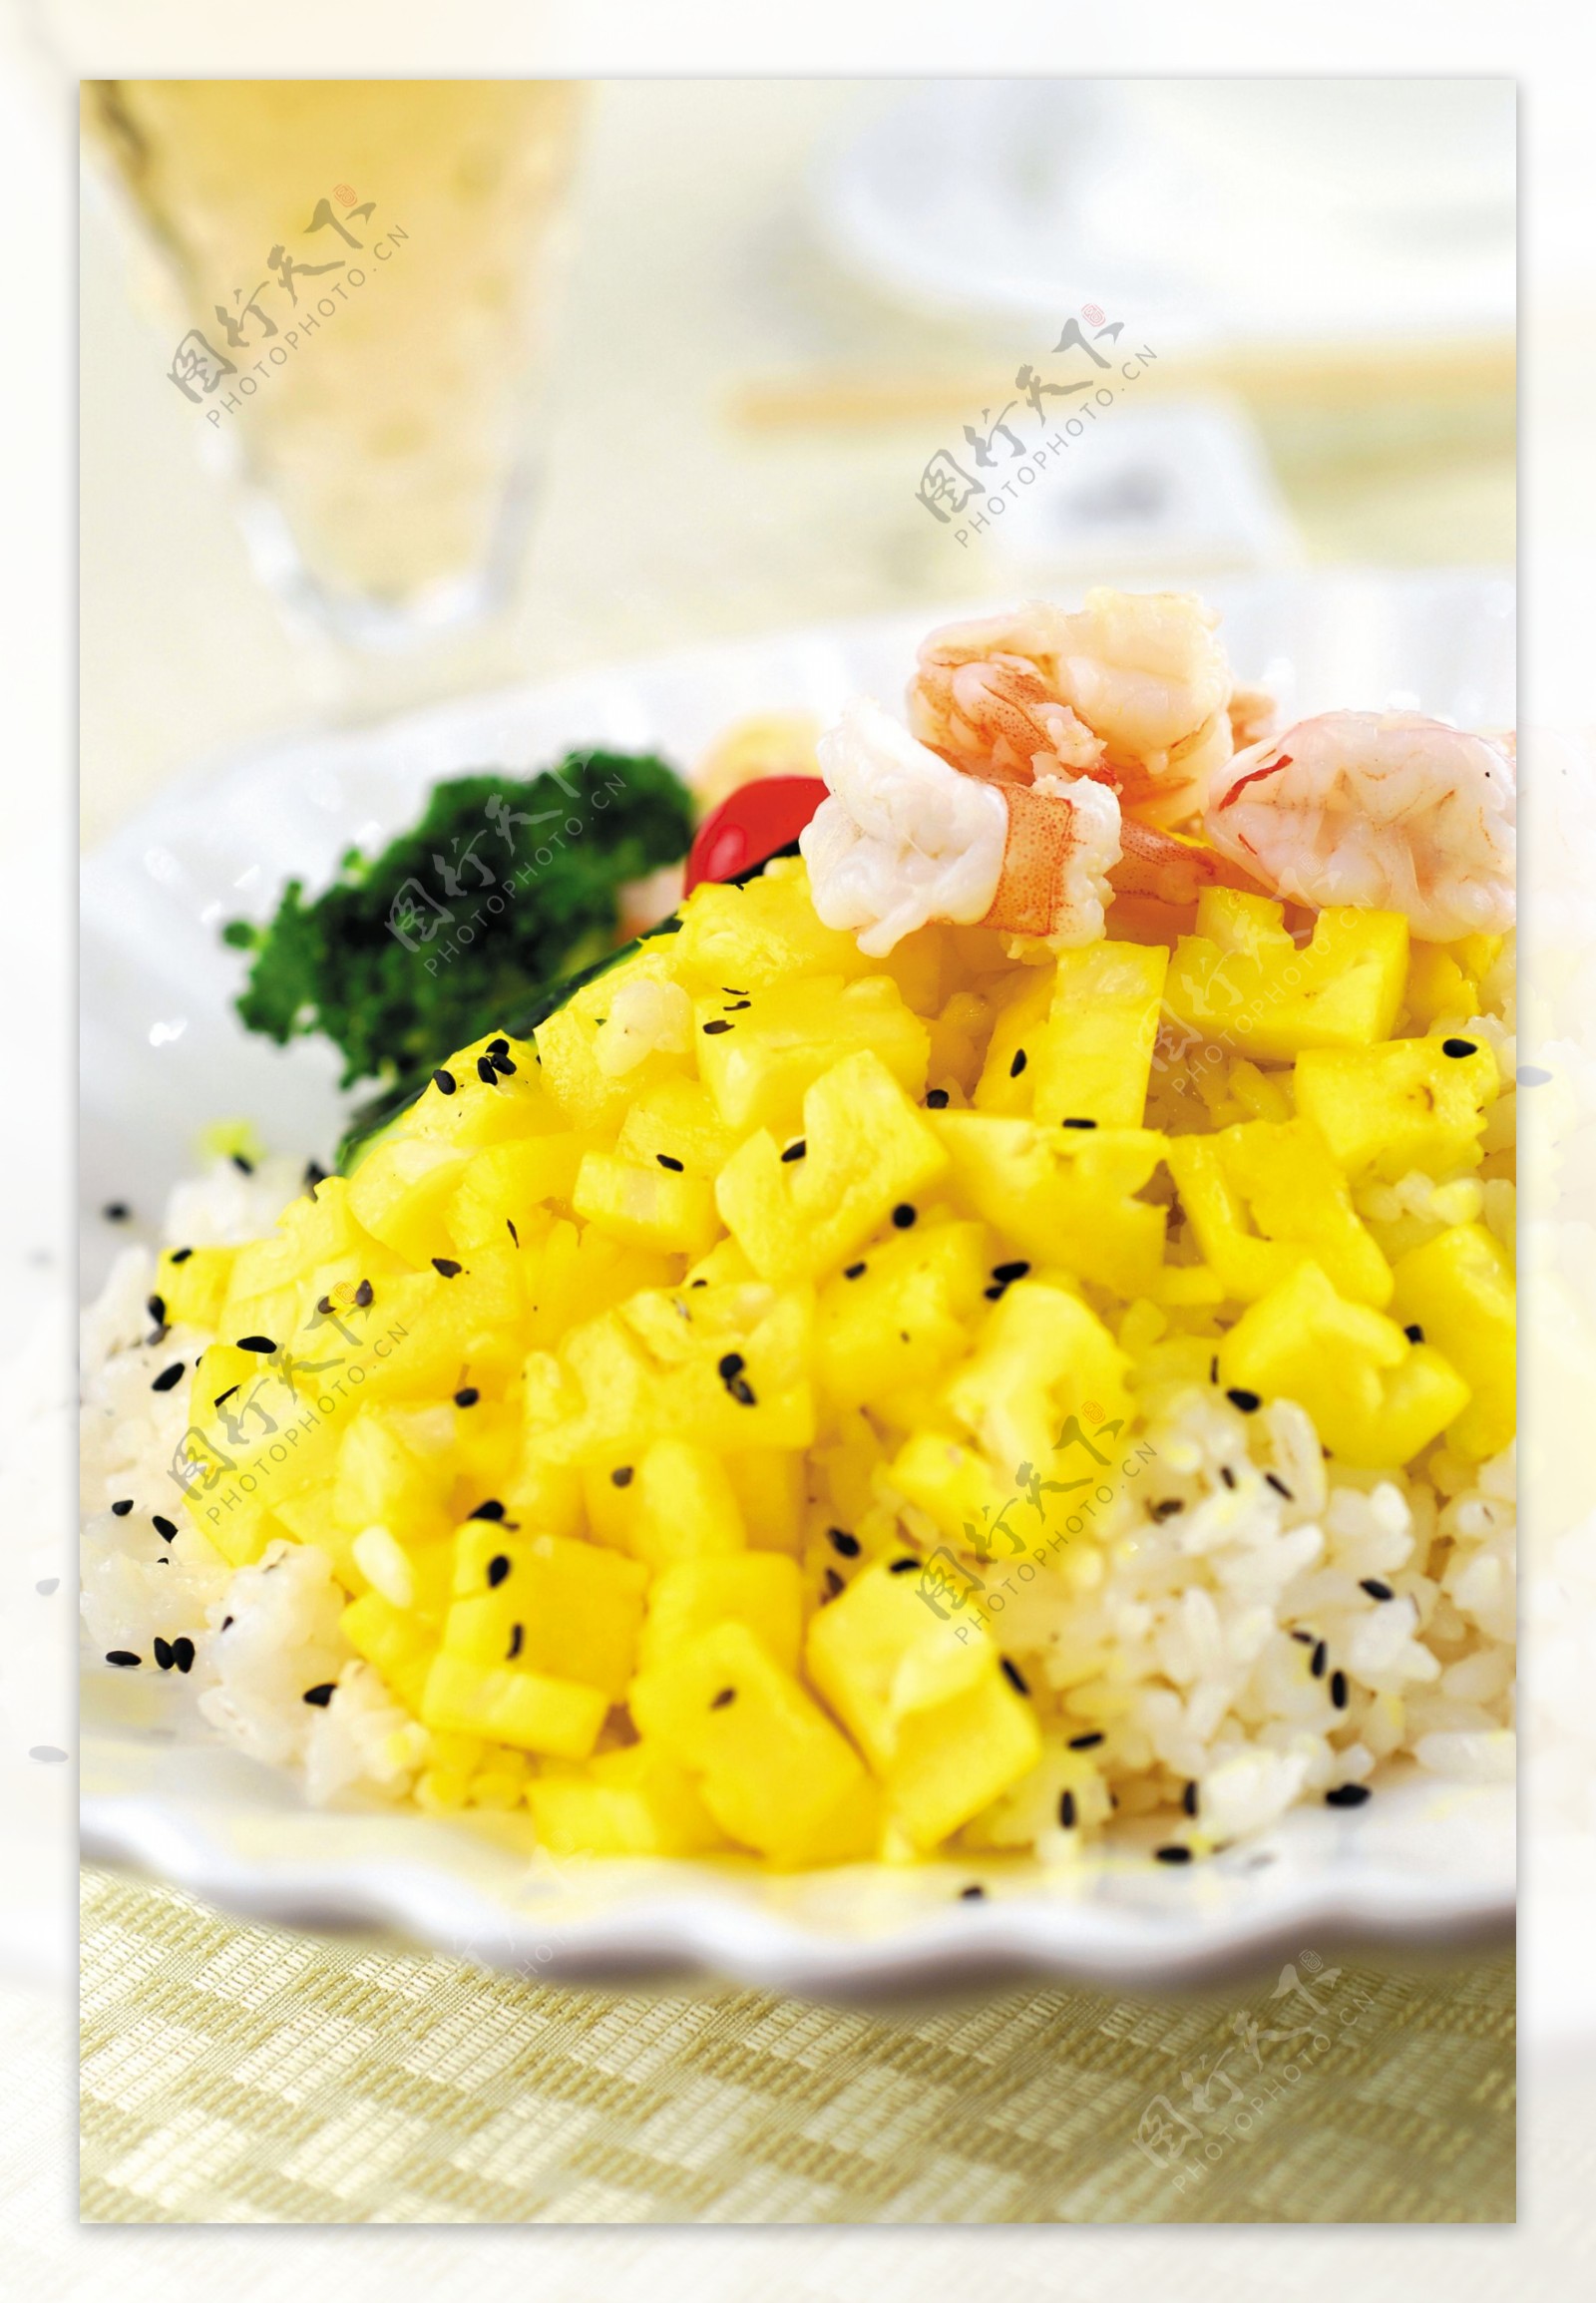 国内美食虾仁菠萝饭图片